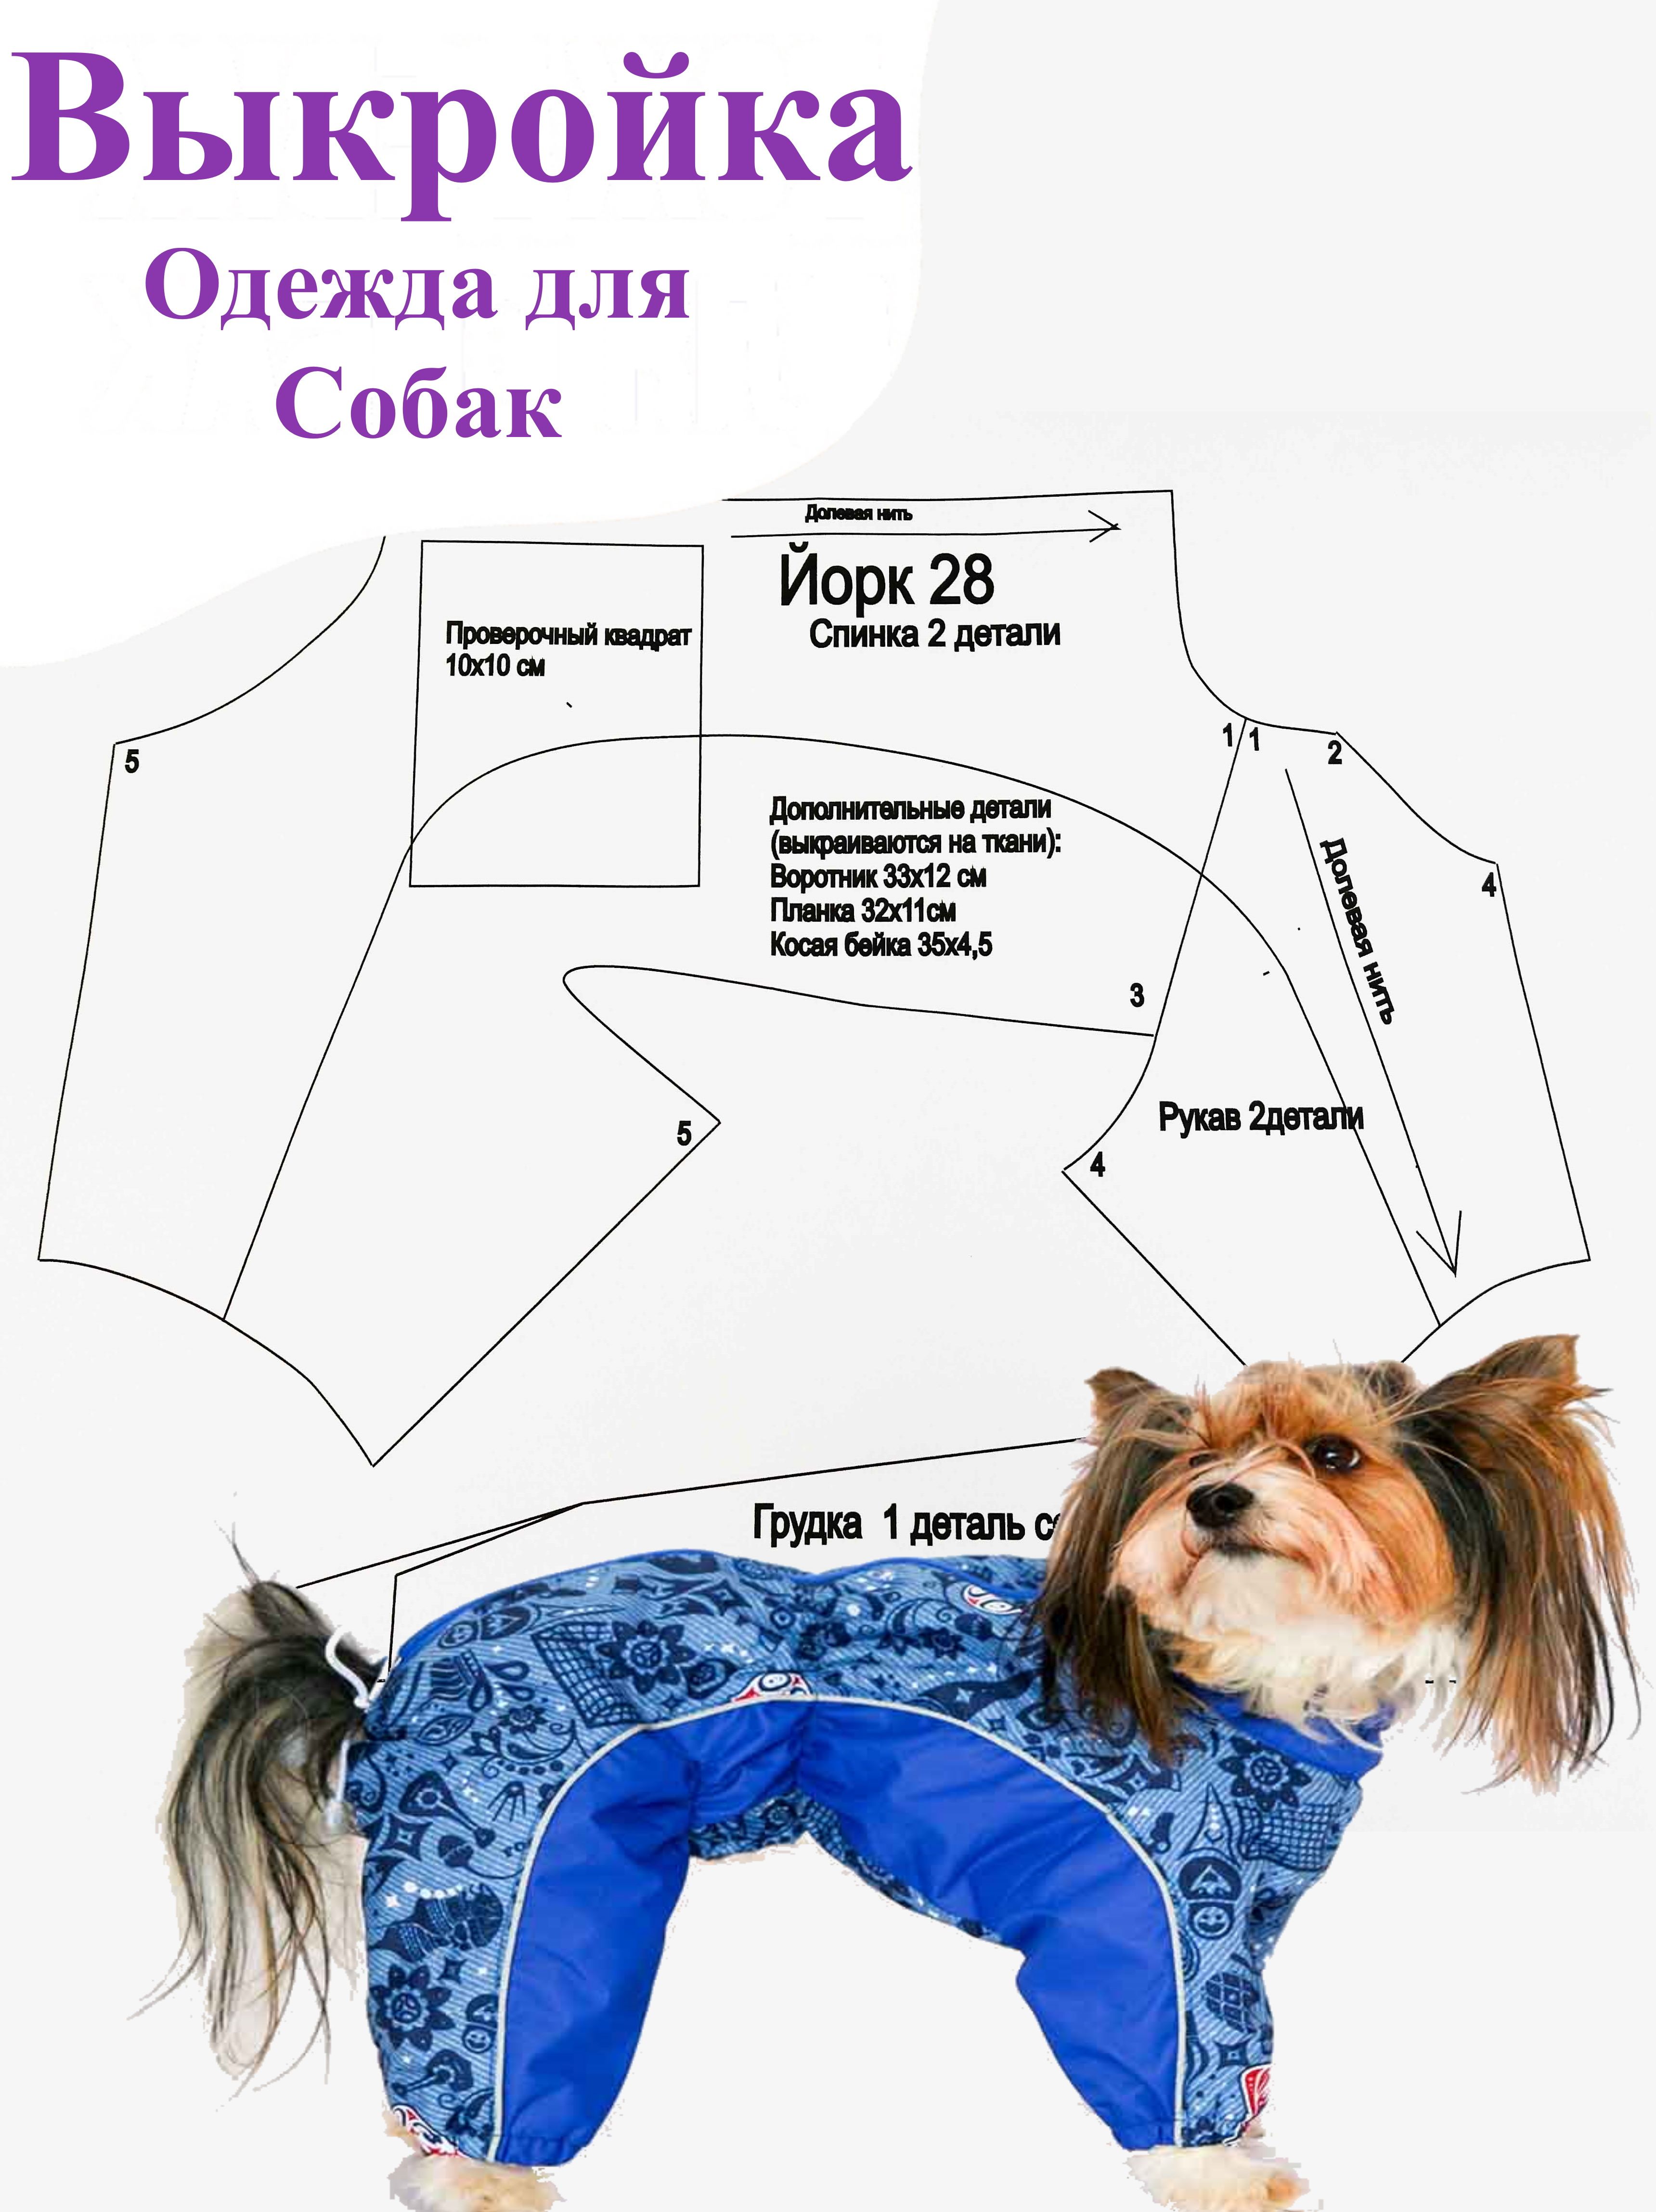 Одежда для собак, выкройки одежды для собак, как сшить комбинезон для собаки